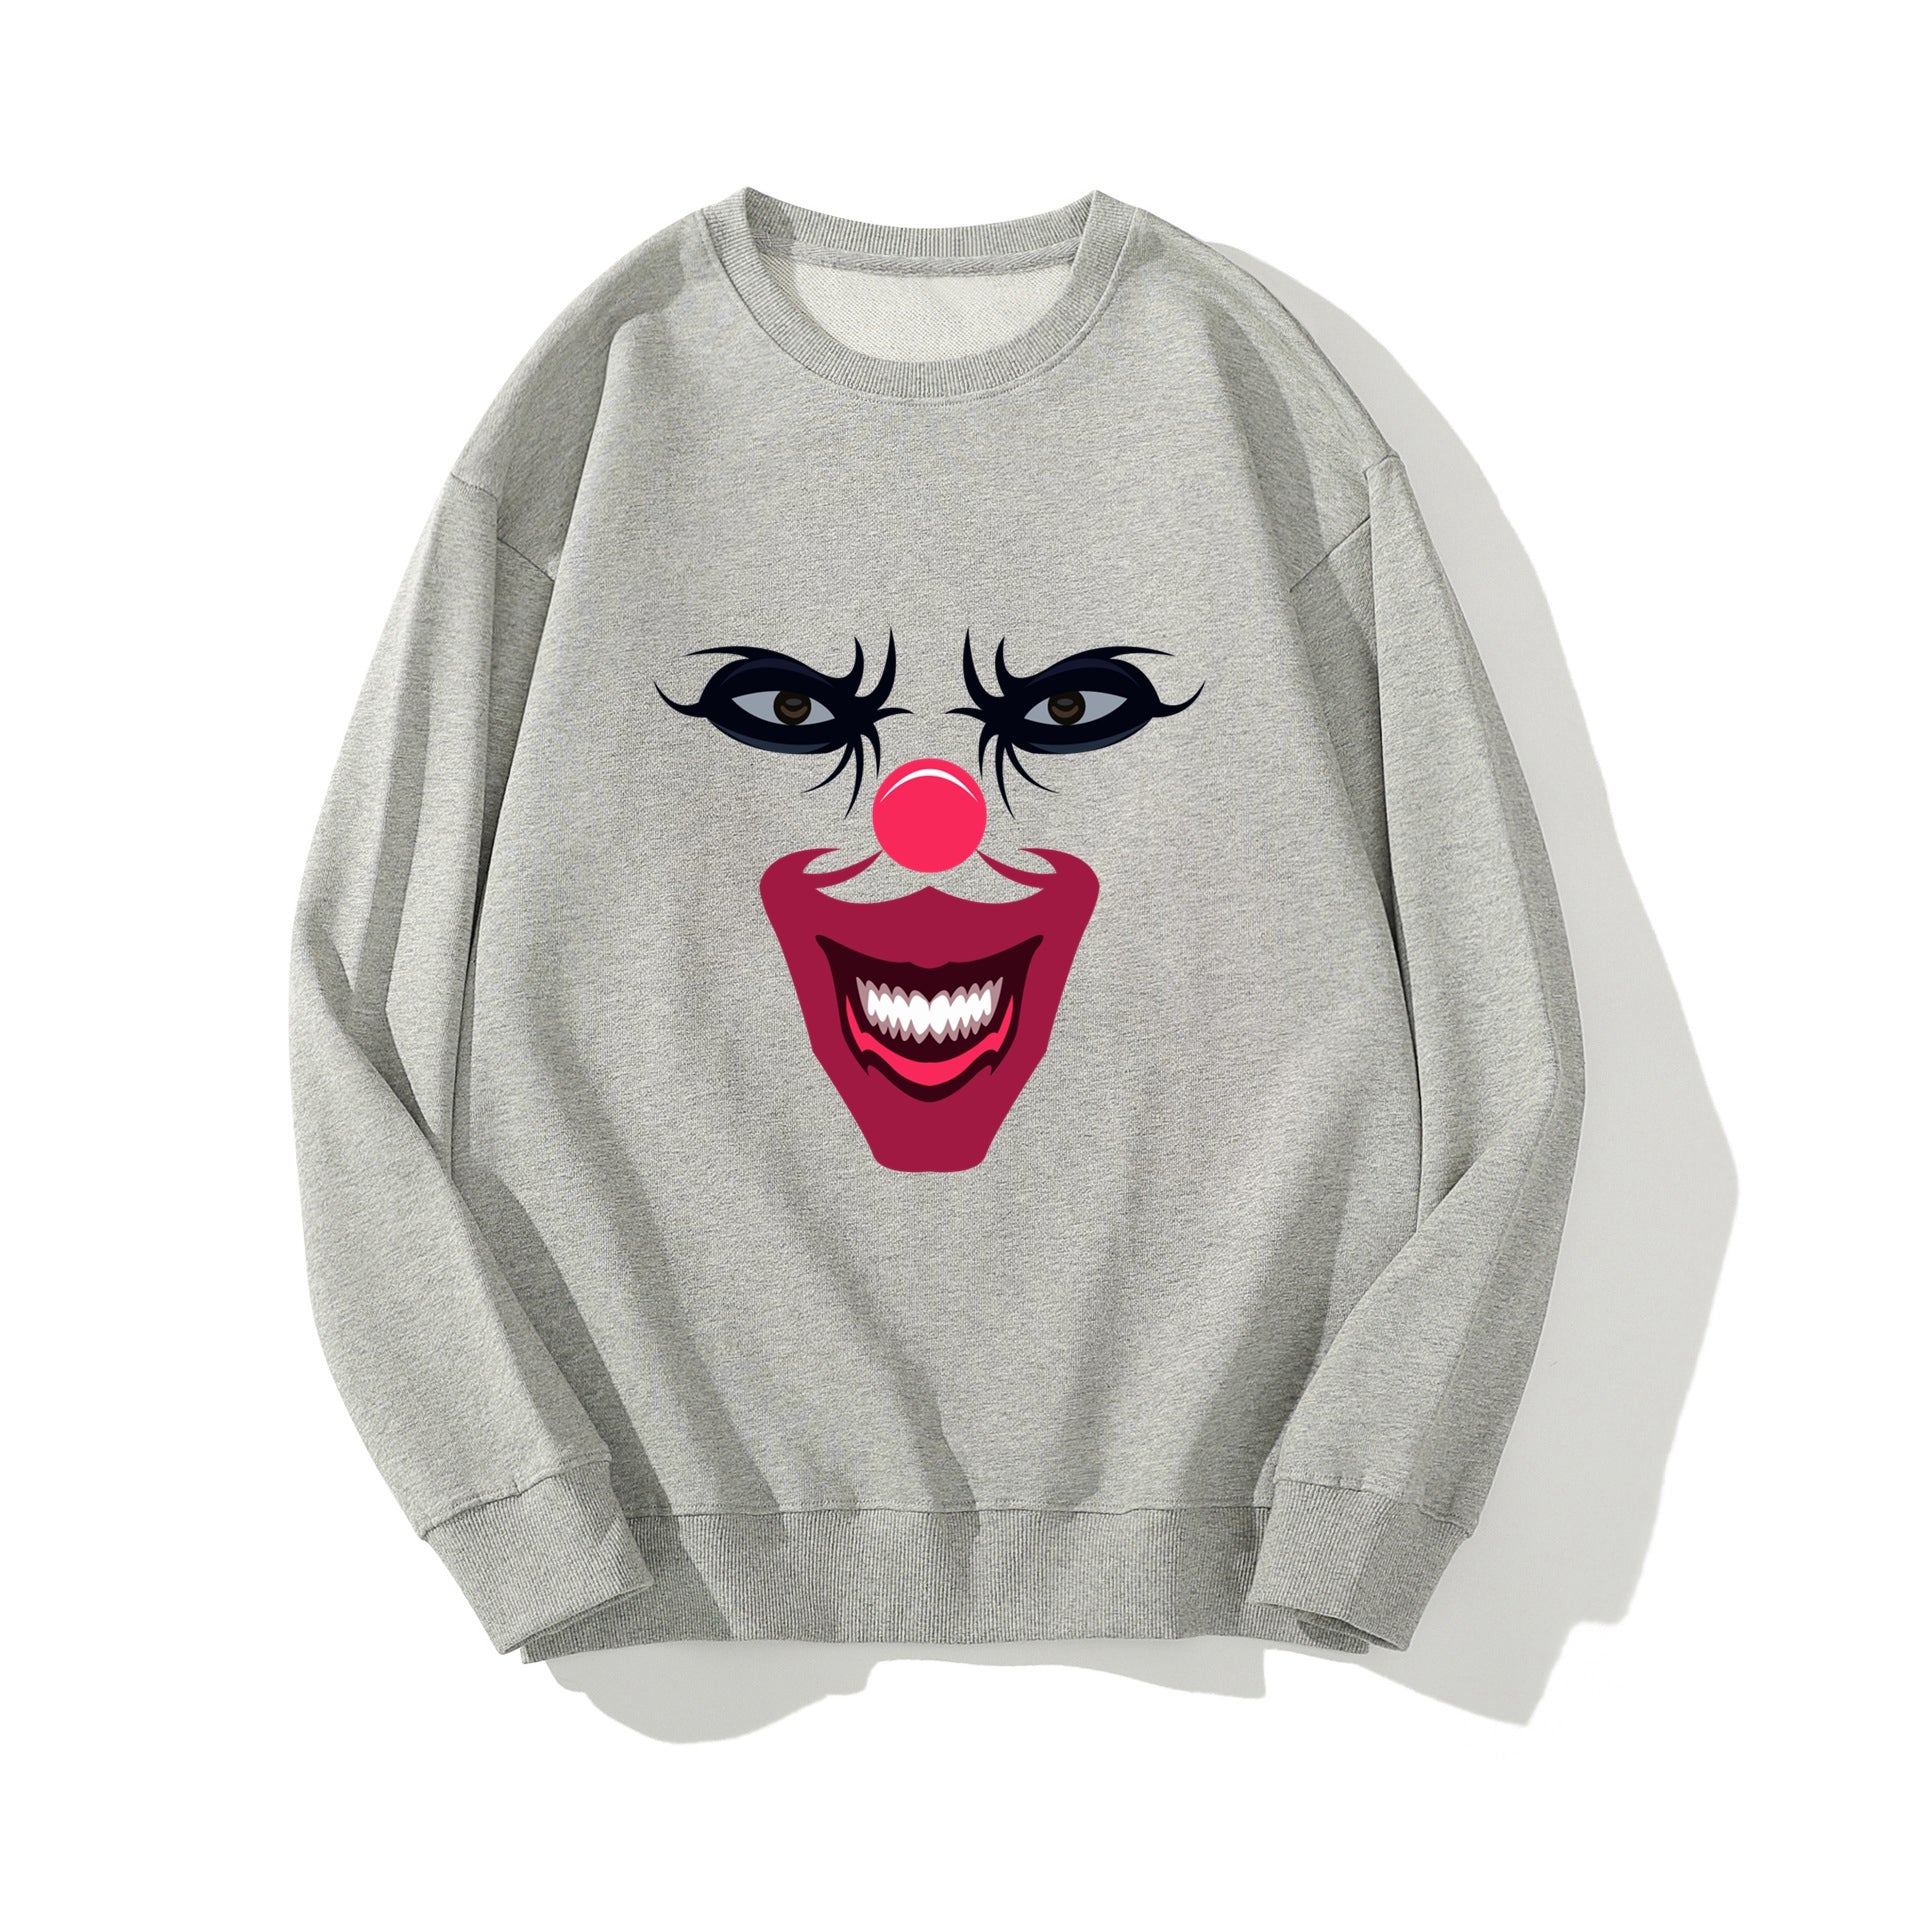 Joker Graphic Print Sweatshirt Clown Crewneck Cotton Sweatshirt Men's Tops